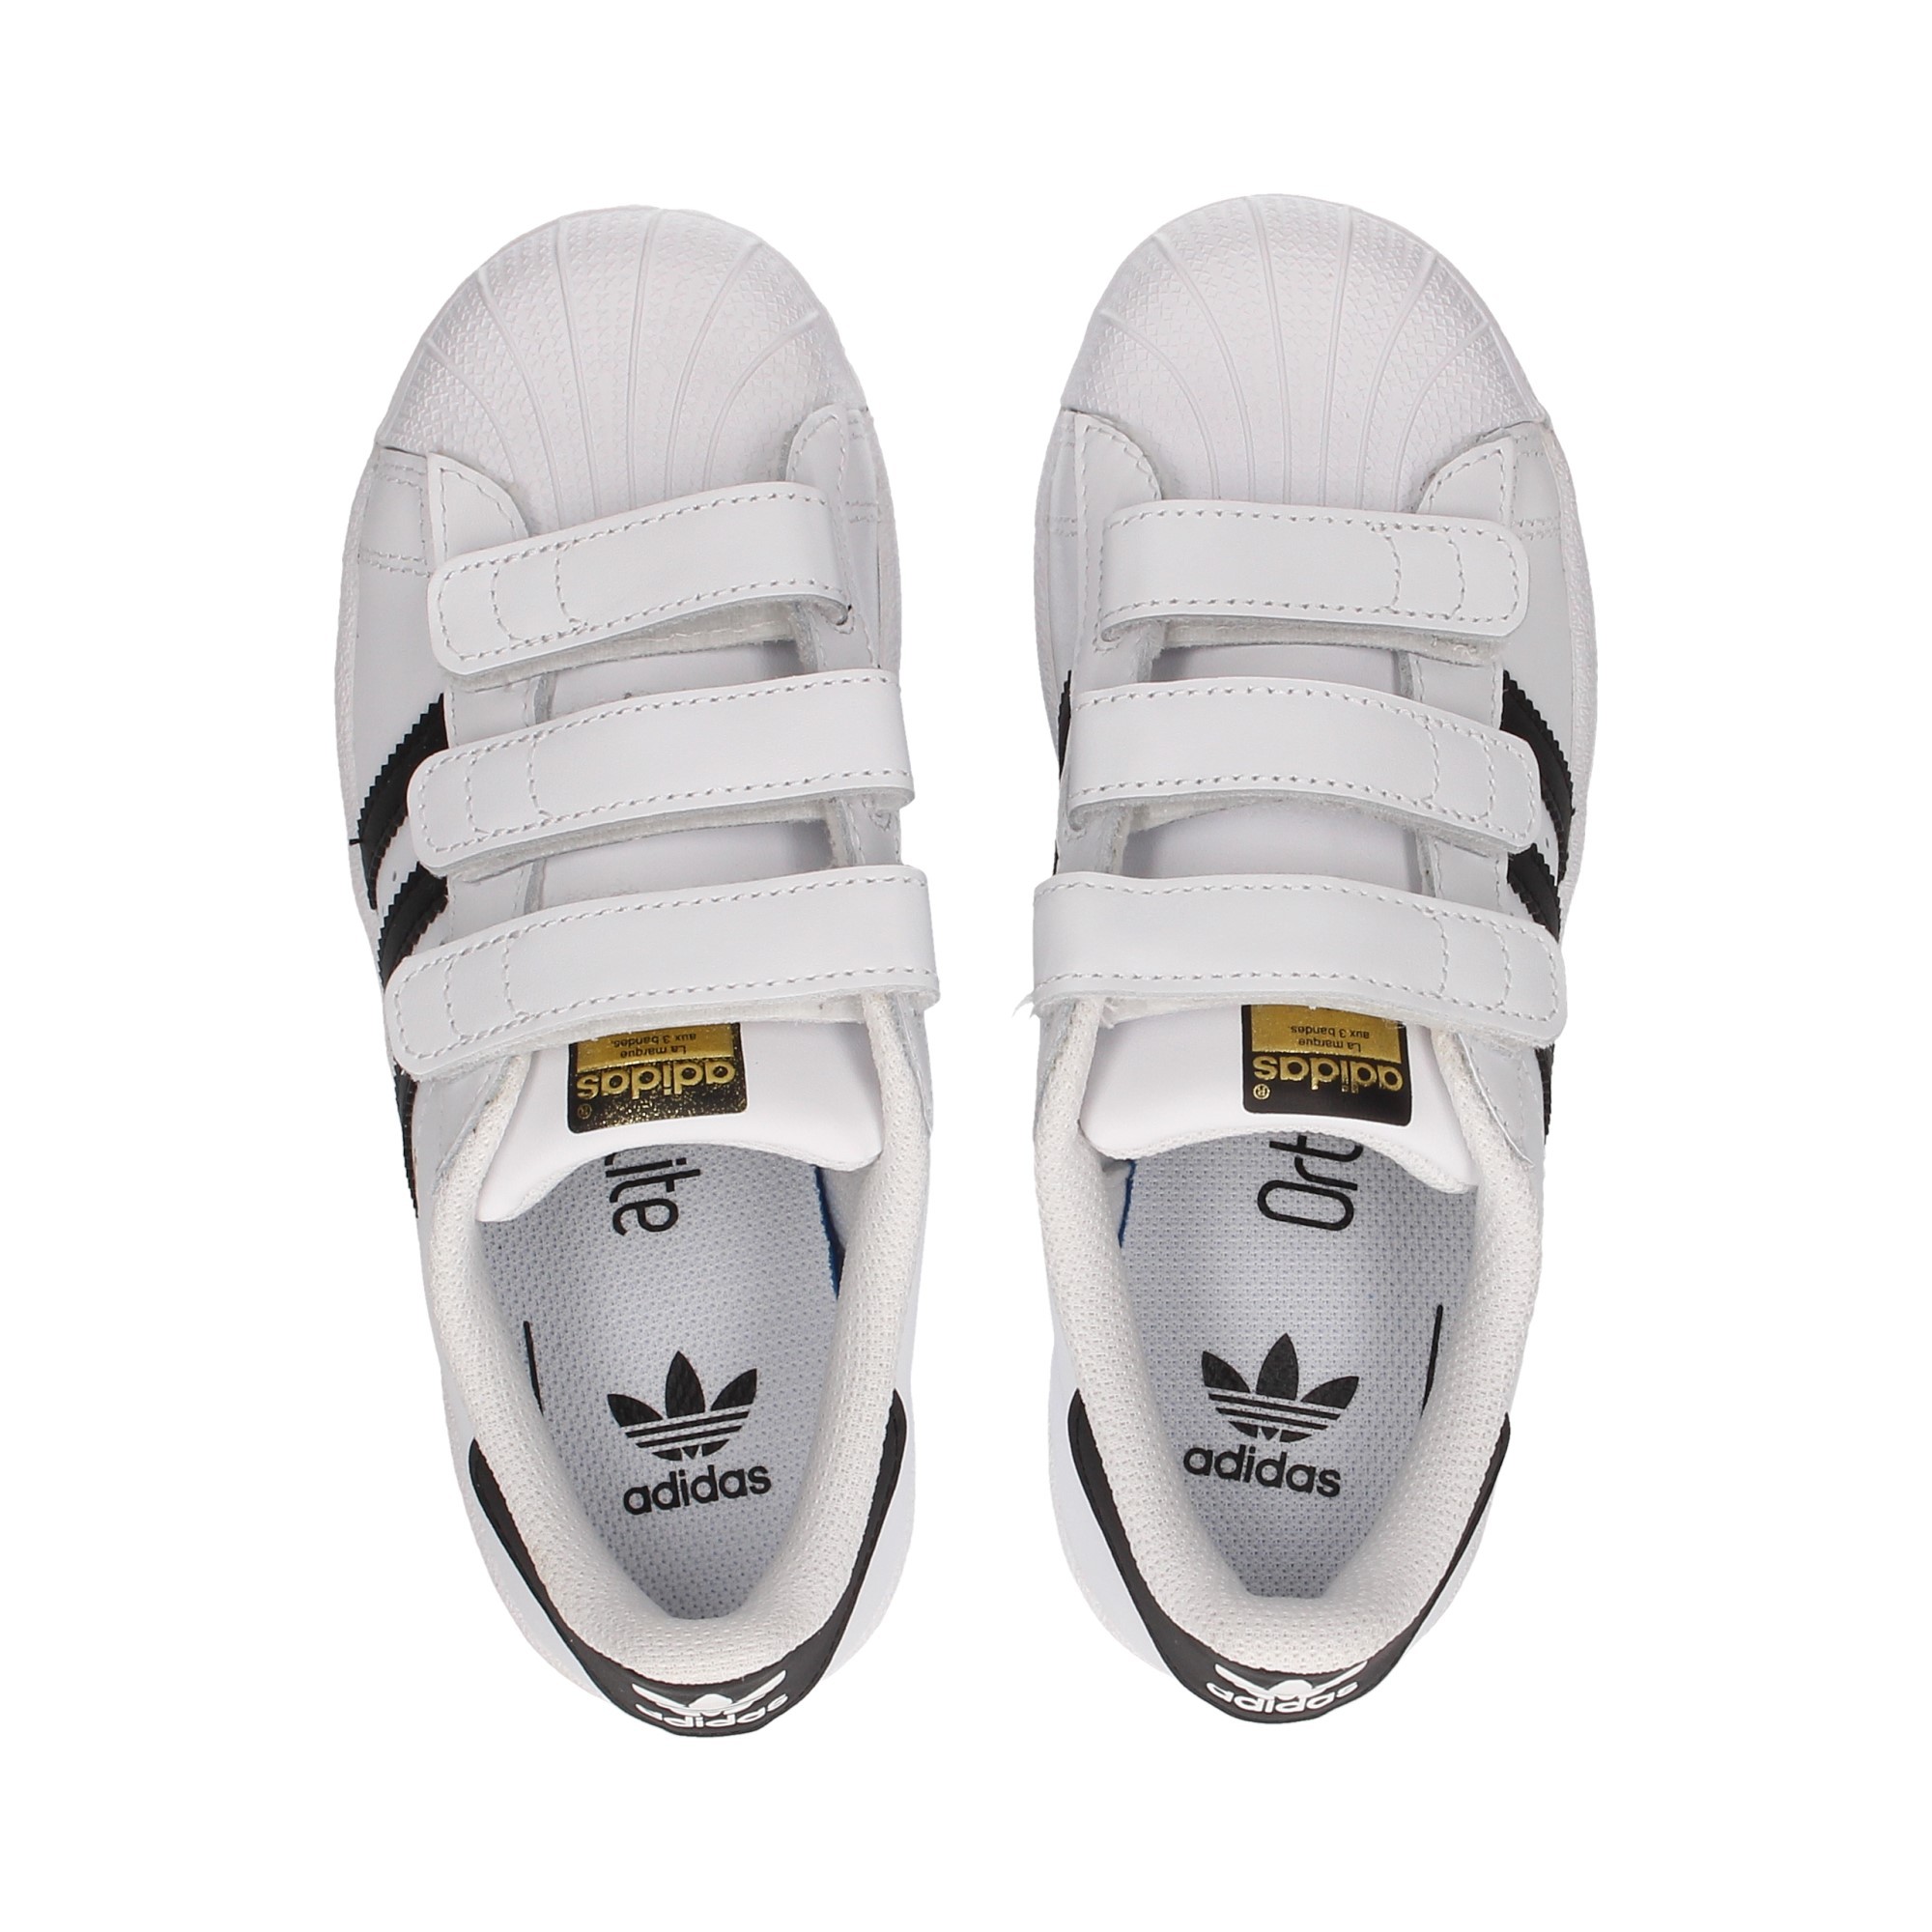 sneaker-3-velcros-white